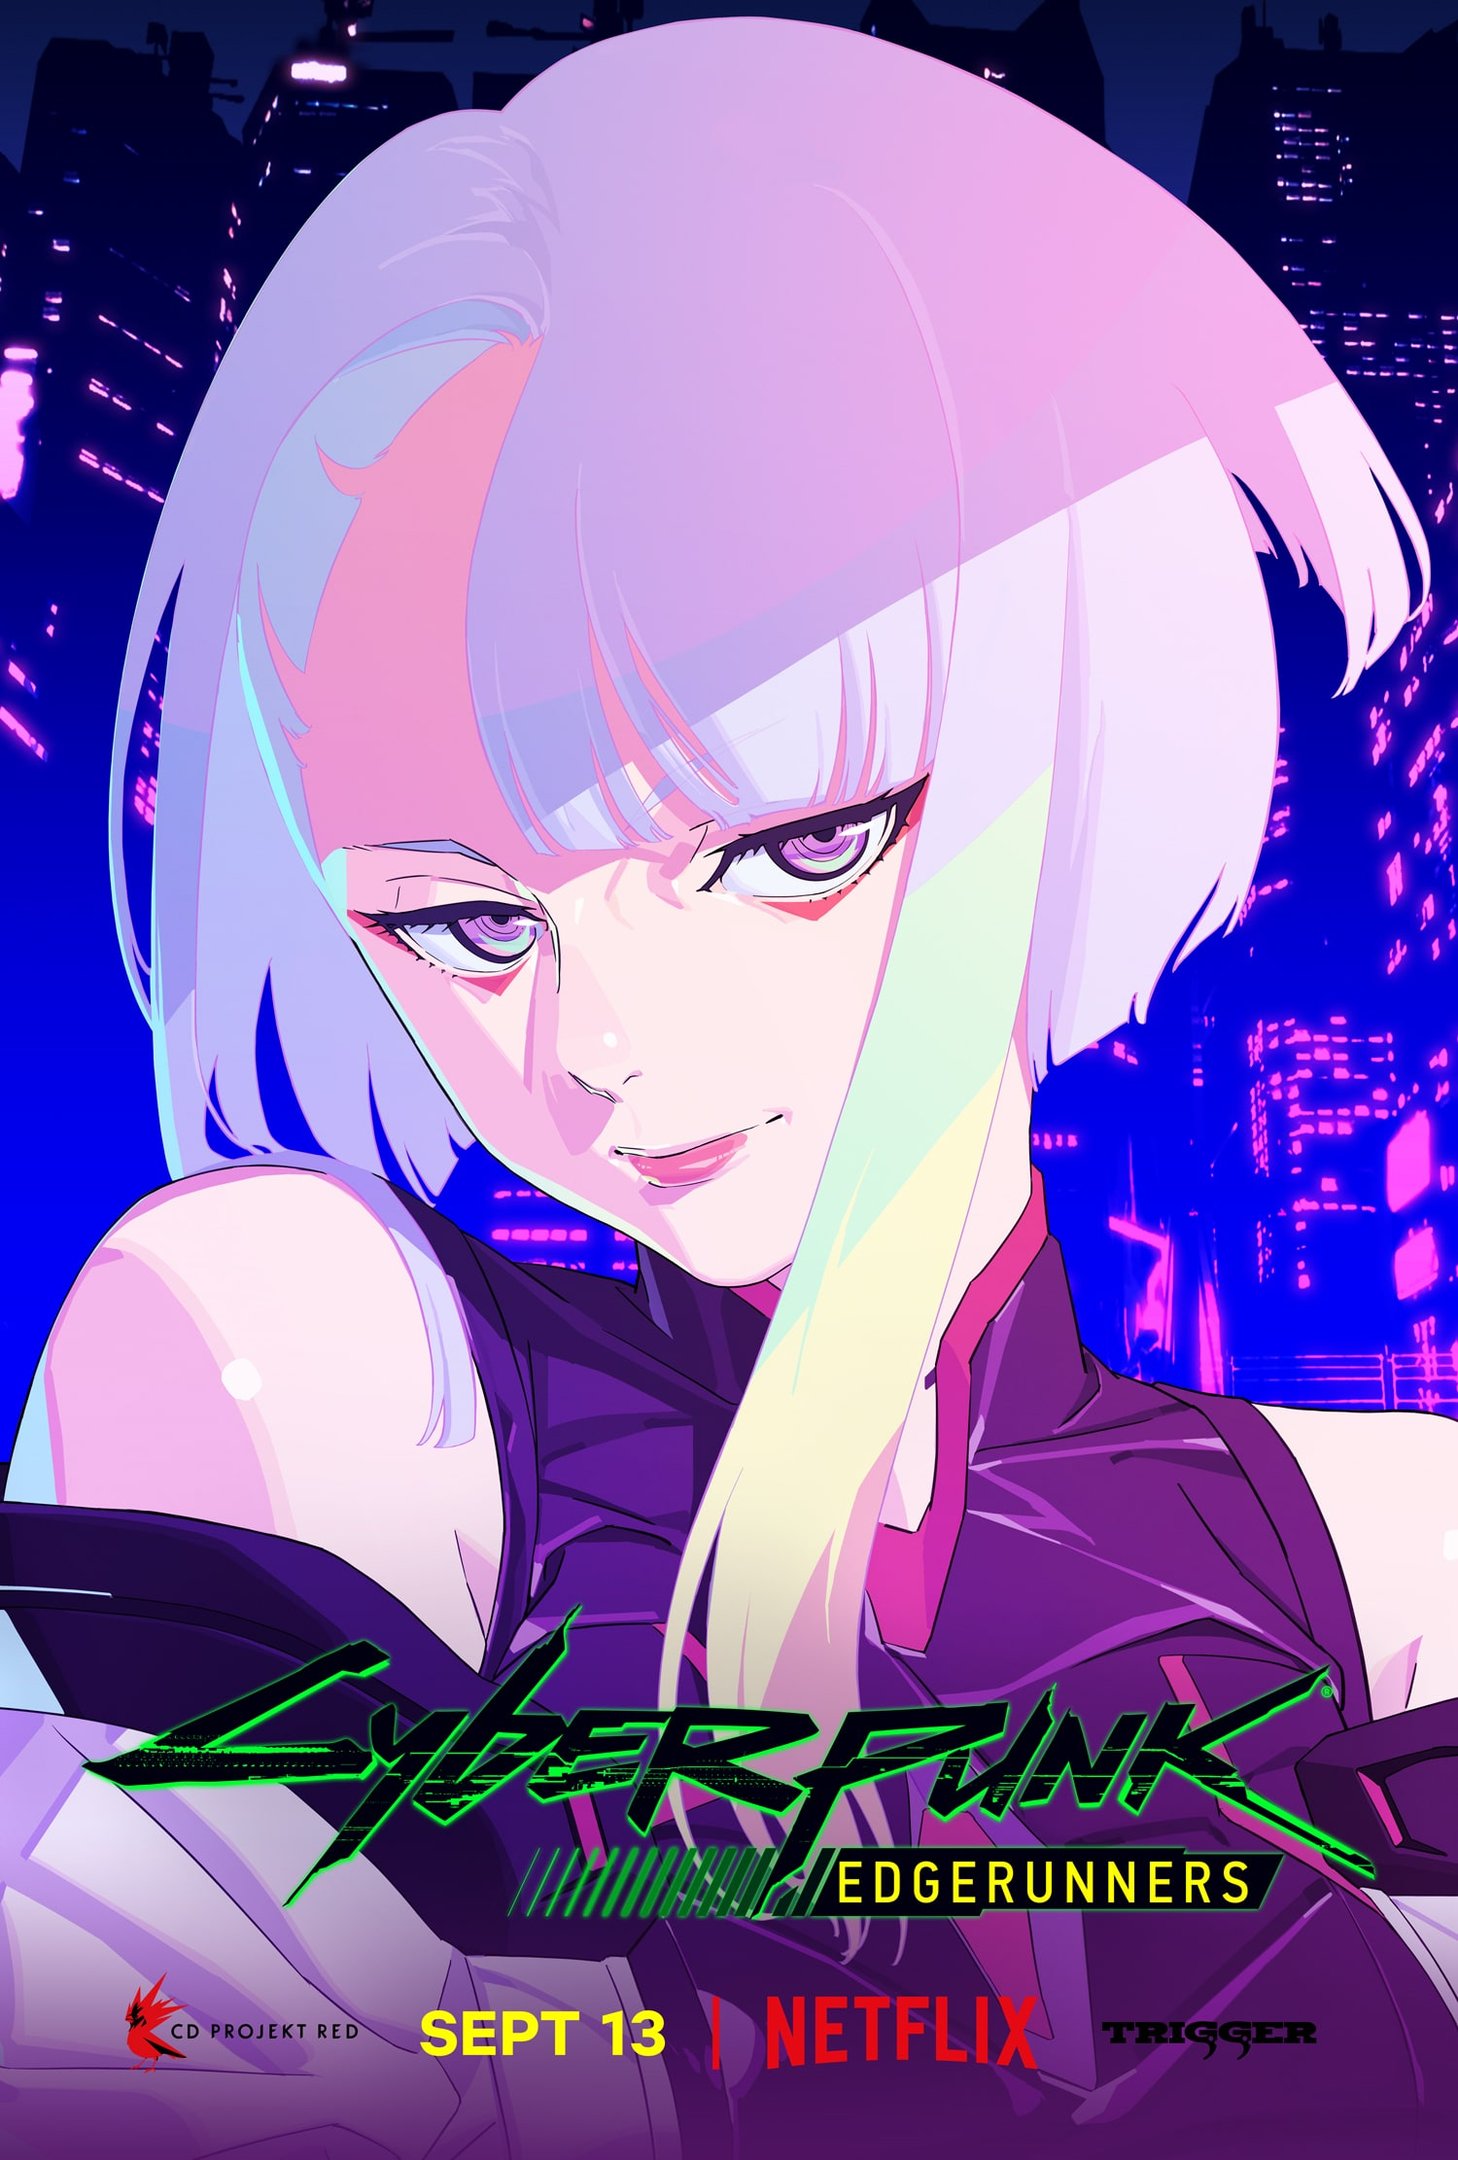 Cyberpunk 2077 recebe atualização dedicada ao anime Mercenários